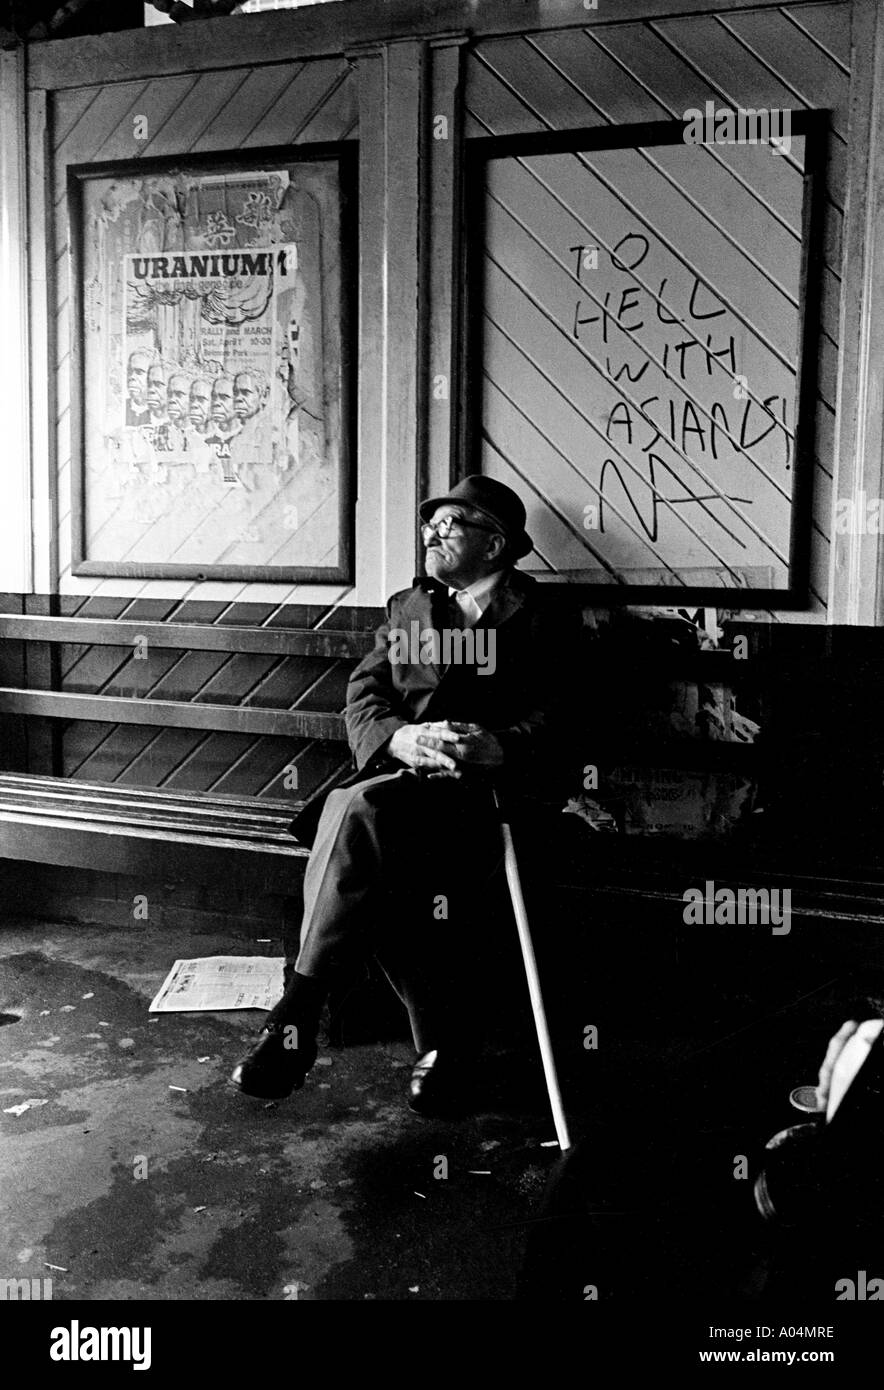 Un homme blanc âgé avec un bâton de marche assis dans un Abri en bus avec graffiti racial près de Circular Quay Sydney Australie 1977 Banque D'Images